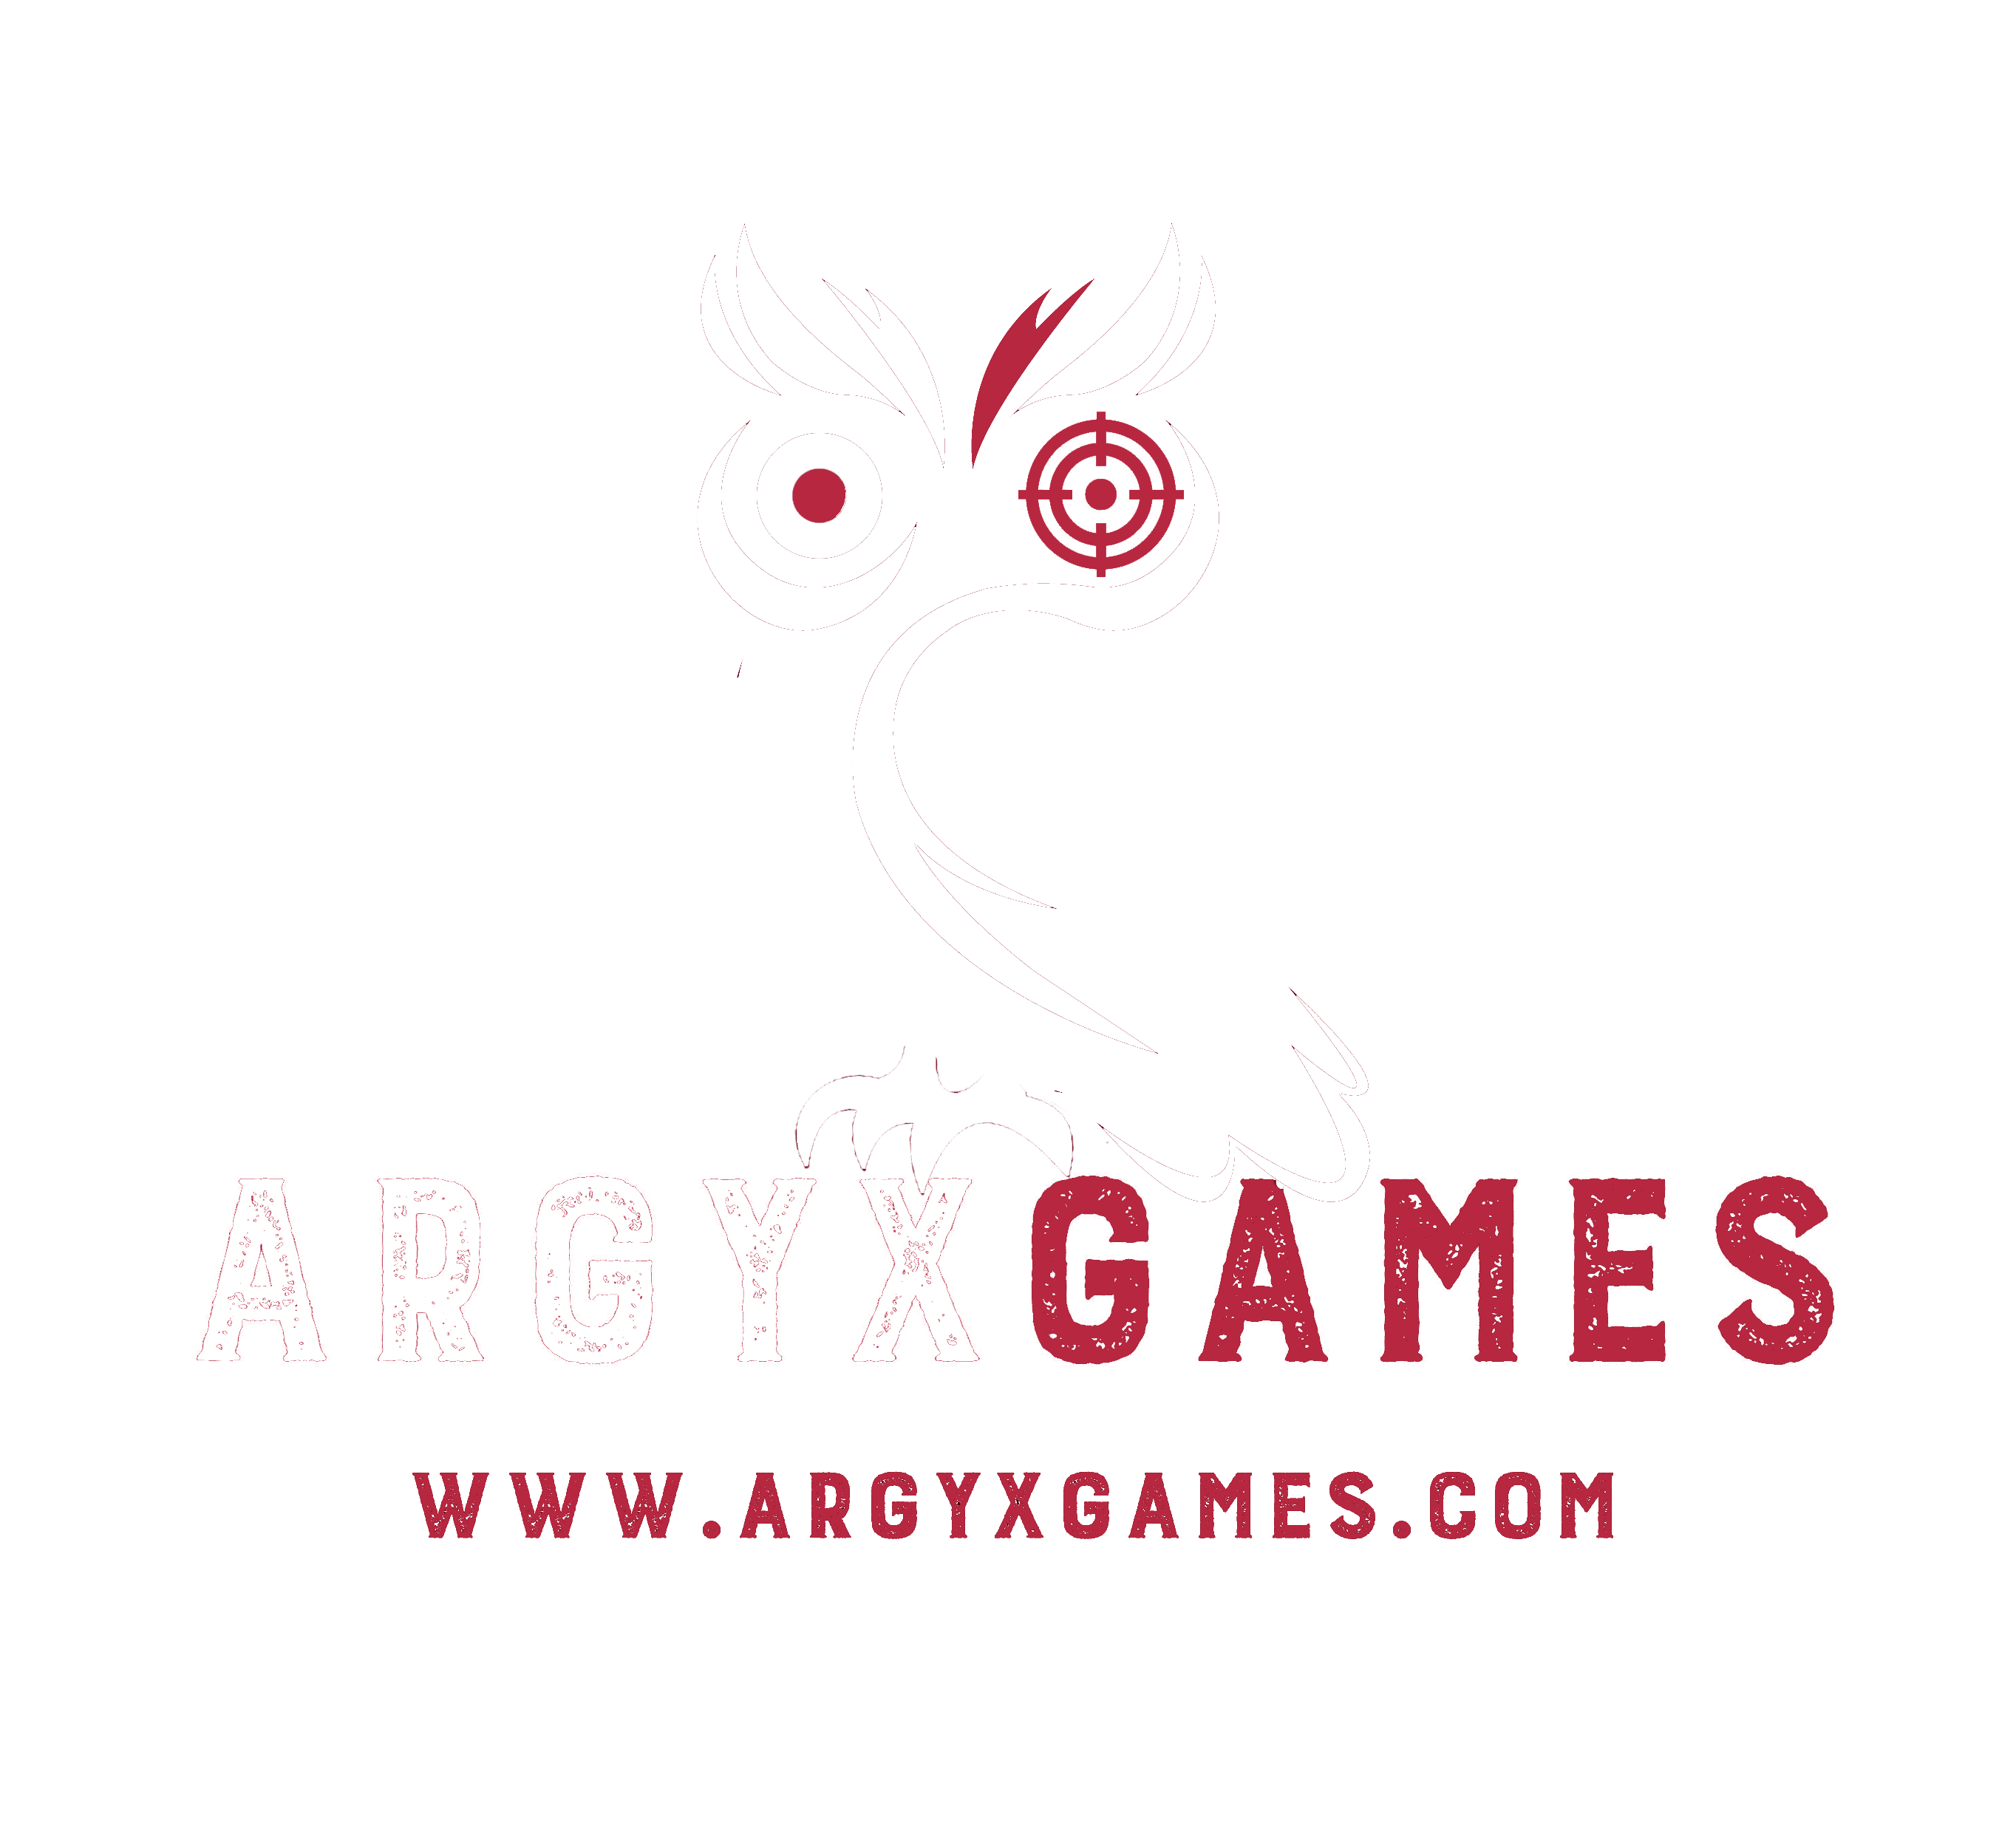 Argyx Games